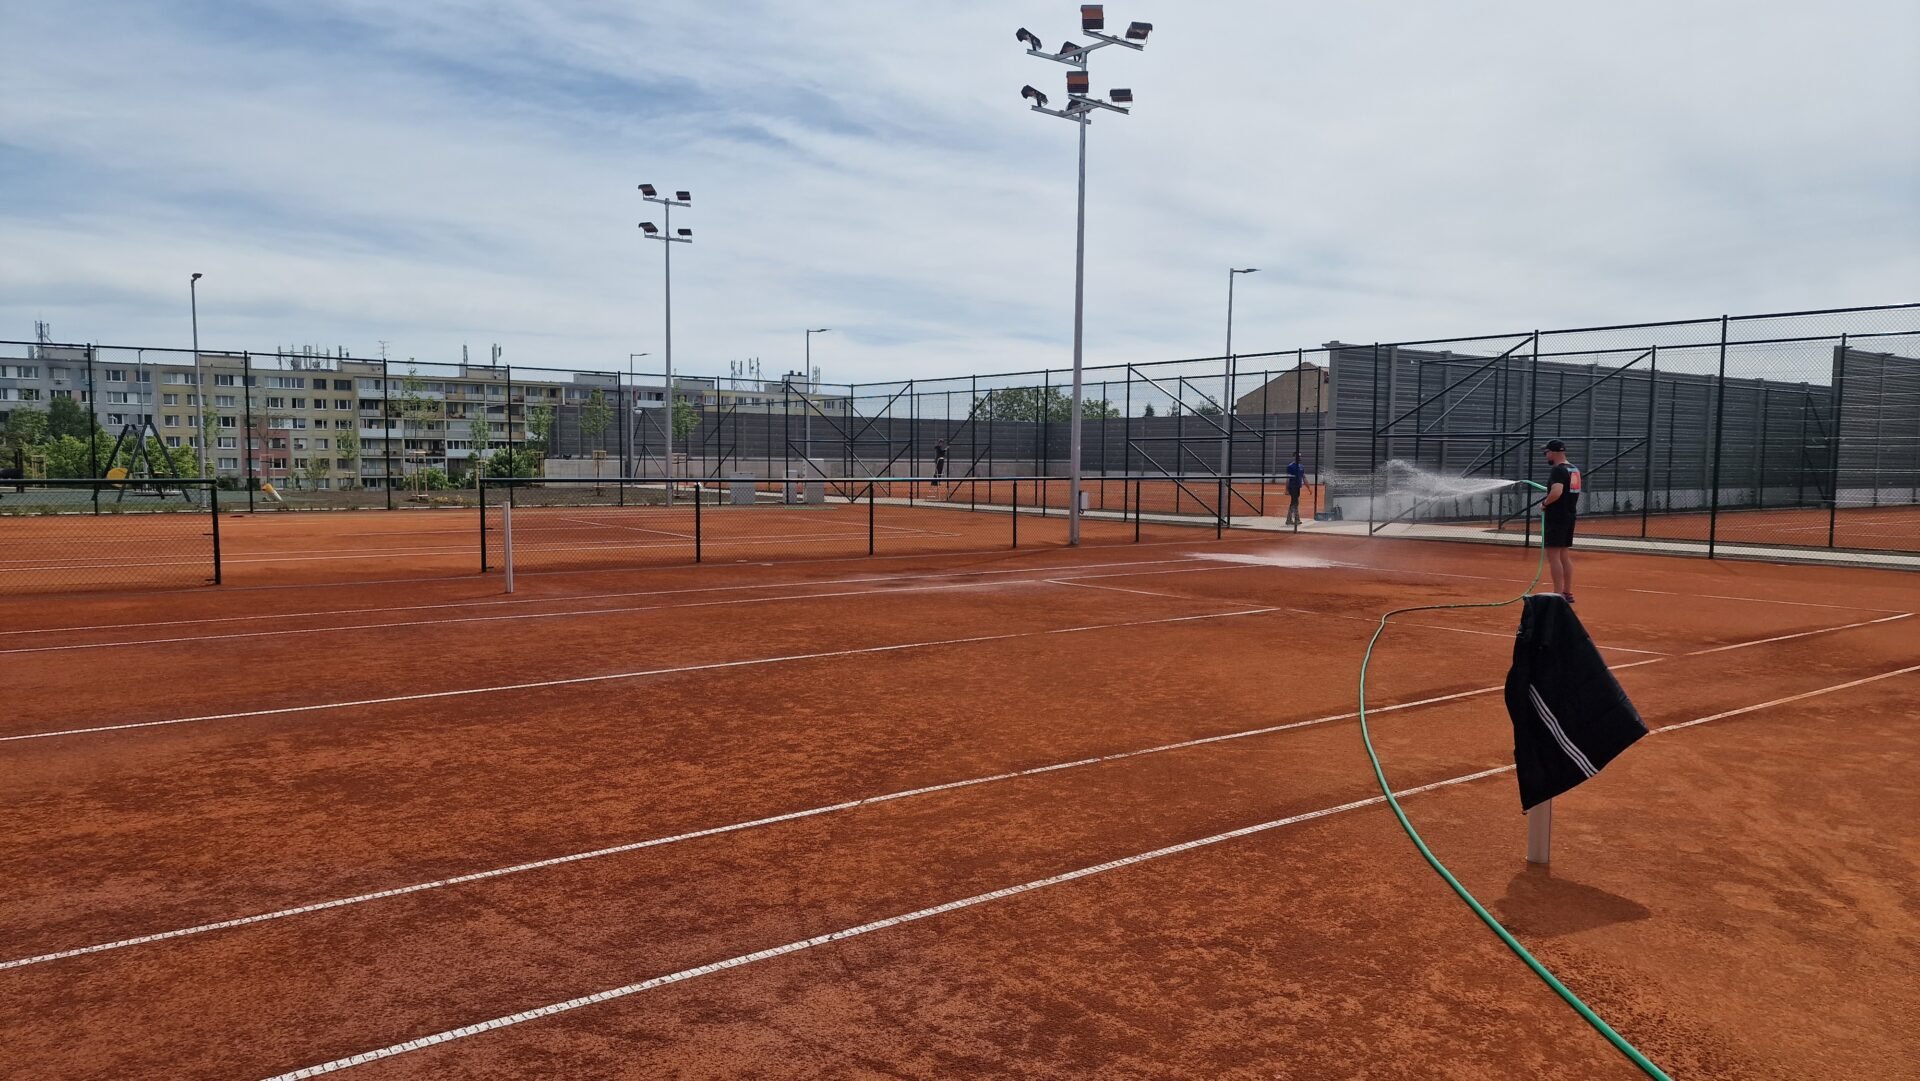 Košiačnia si môžu zahrať tenis alebo bedminton v modernom tréningovom centre (FOTO)